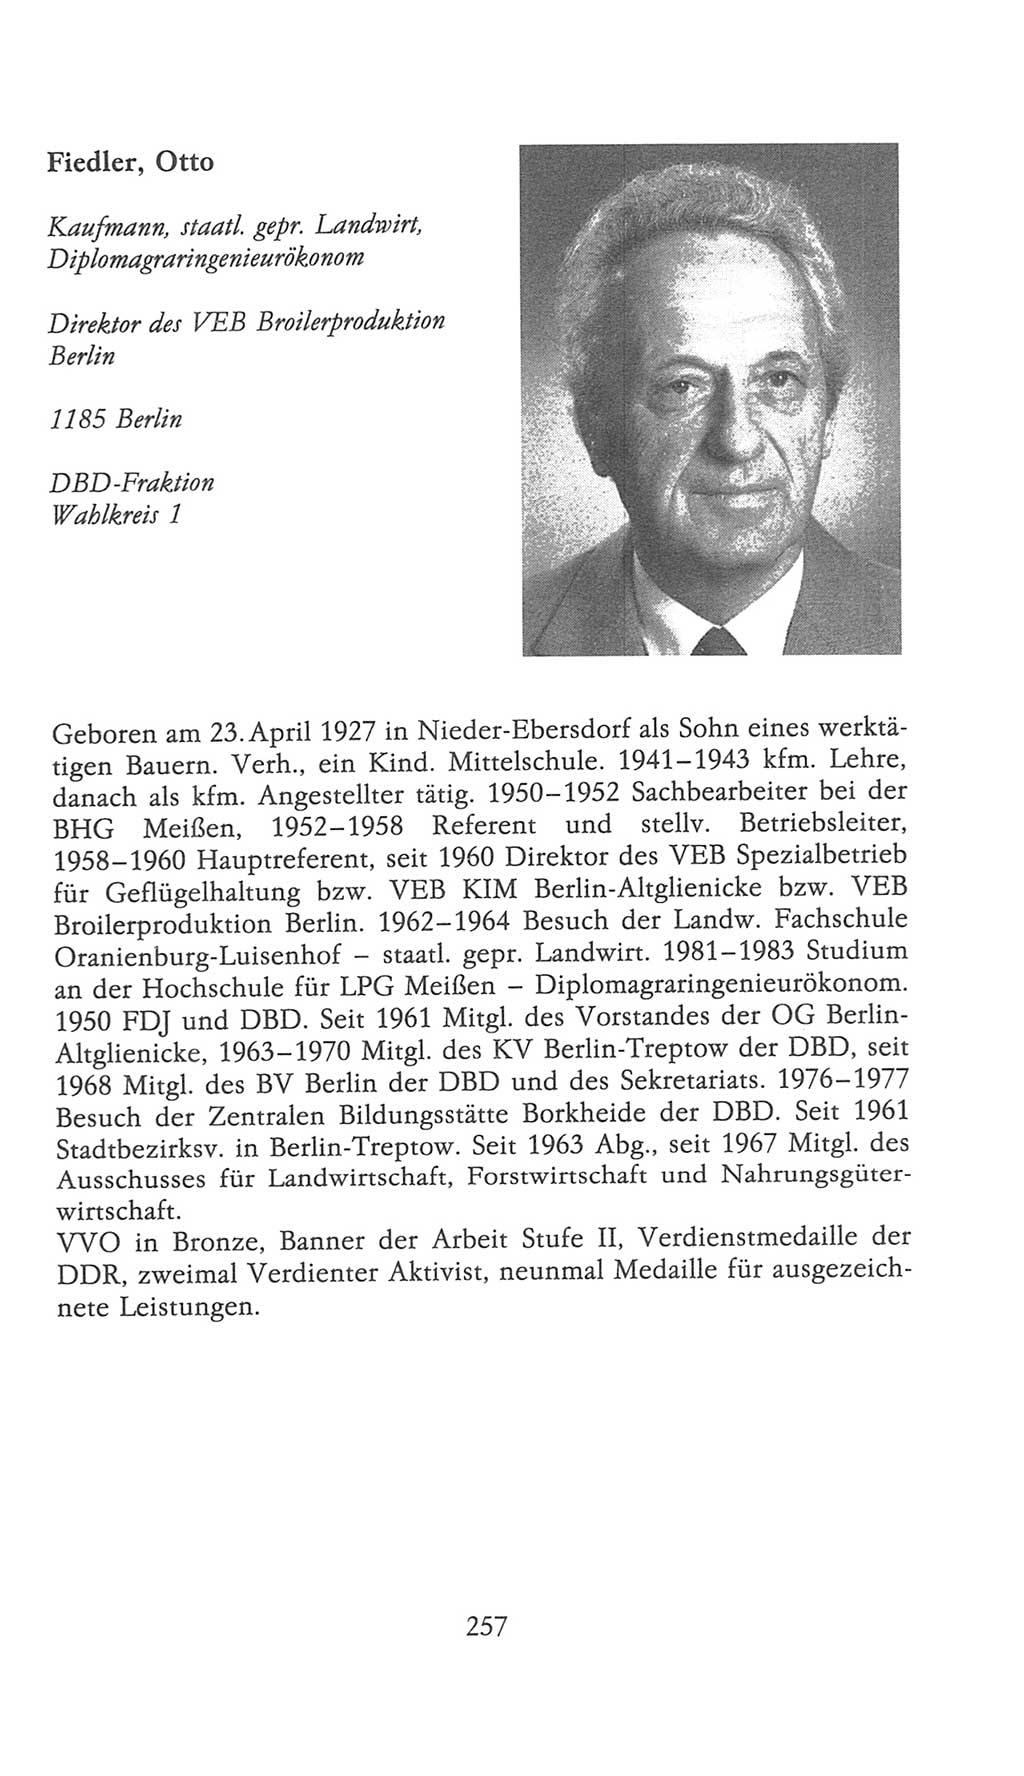 Volkskammer (VK) der Deutschen Demokratischen Republik (DDR), 9. Wahlperiode 1986-1990, Seite 257 (VK. DDR 9. WP. 1986-1990, S. 257)